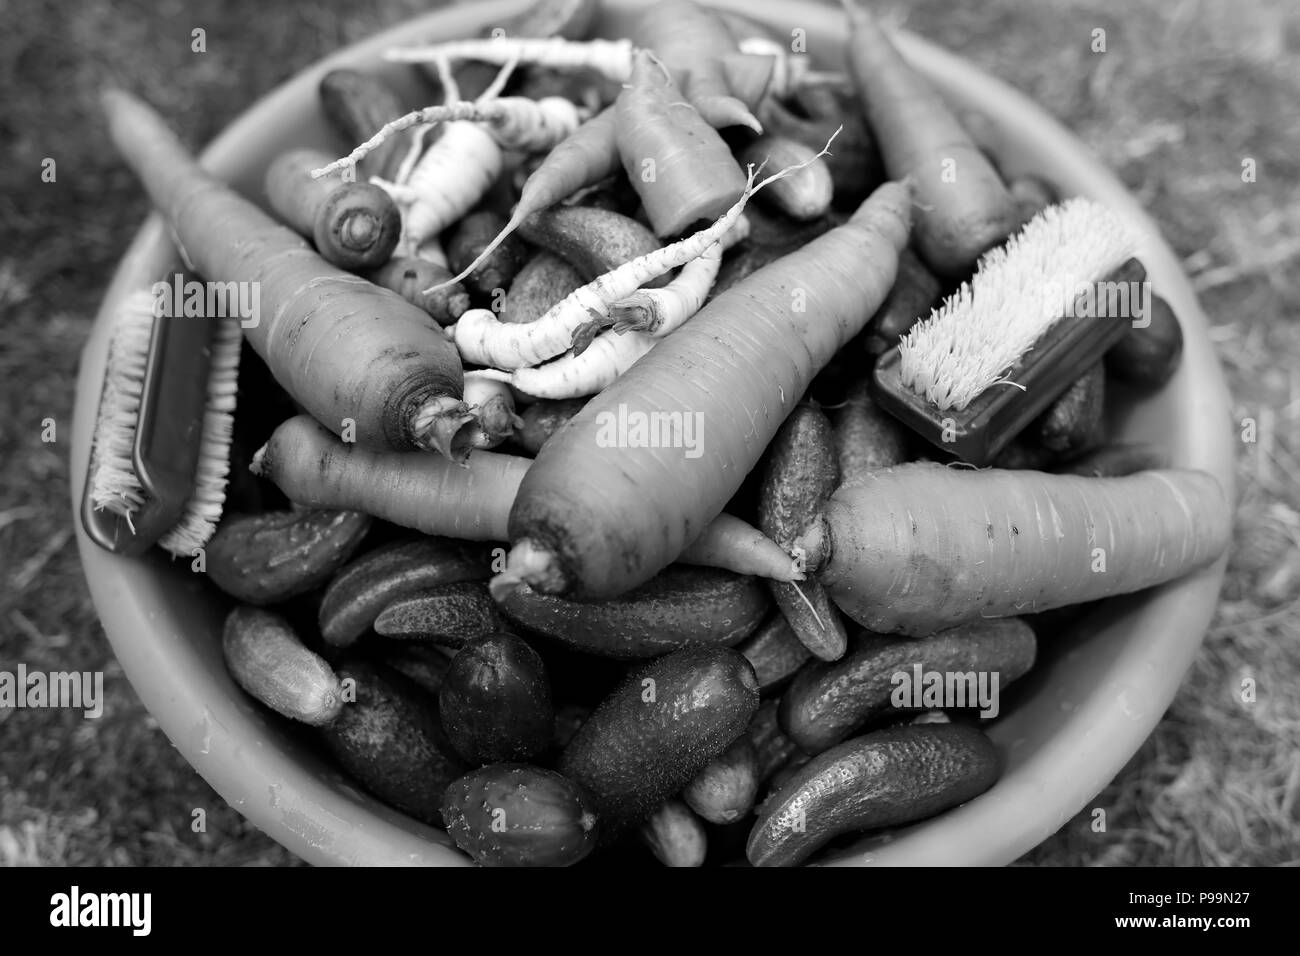 Organici di cetrioli e carote in una ciotola visto dal di sopra, la preparazione di sottaceti Foto Stock